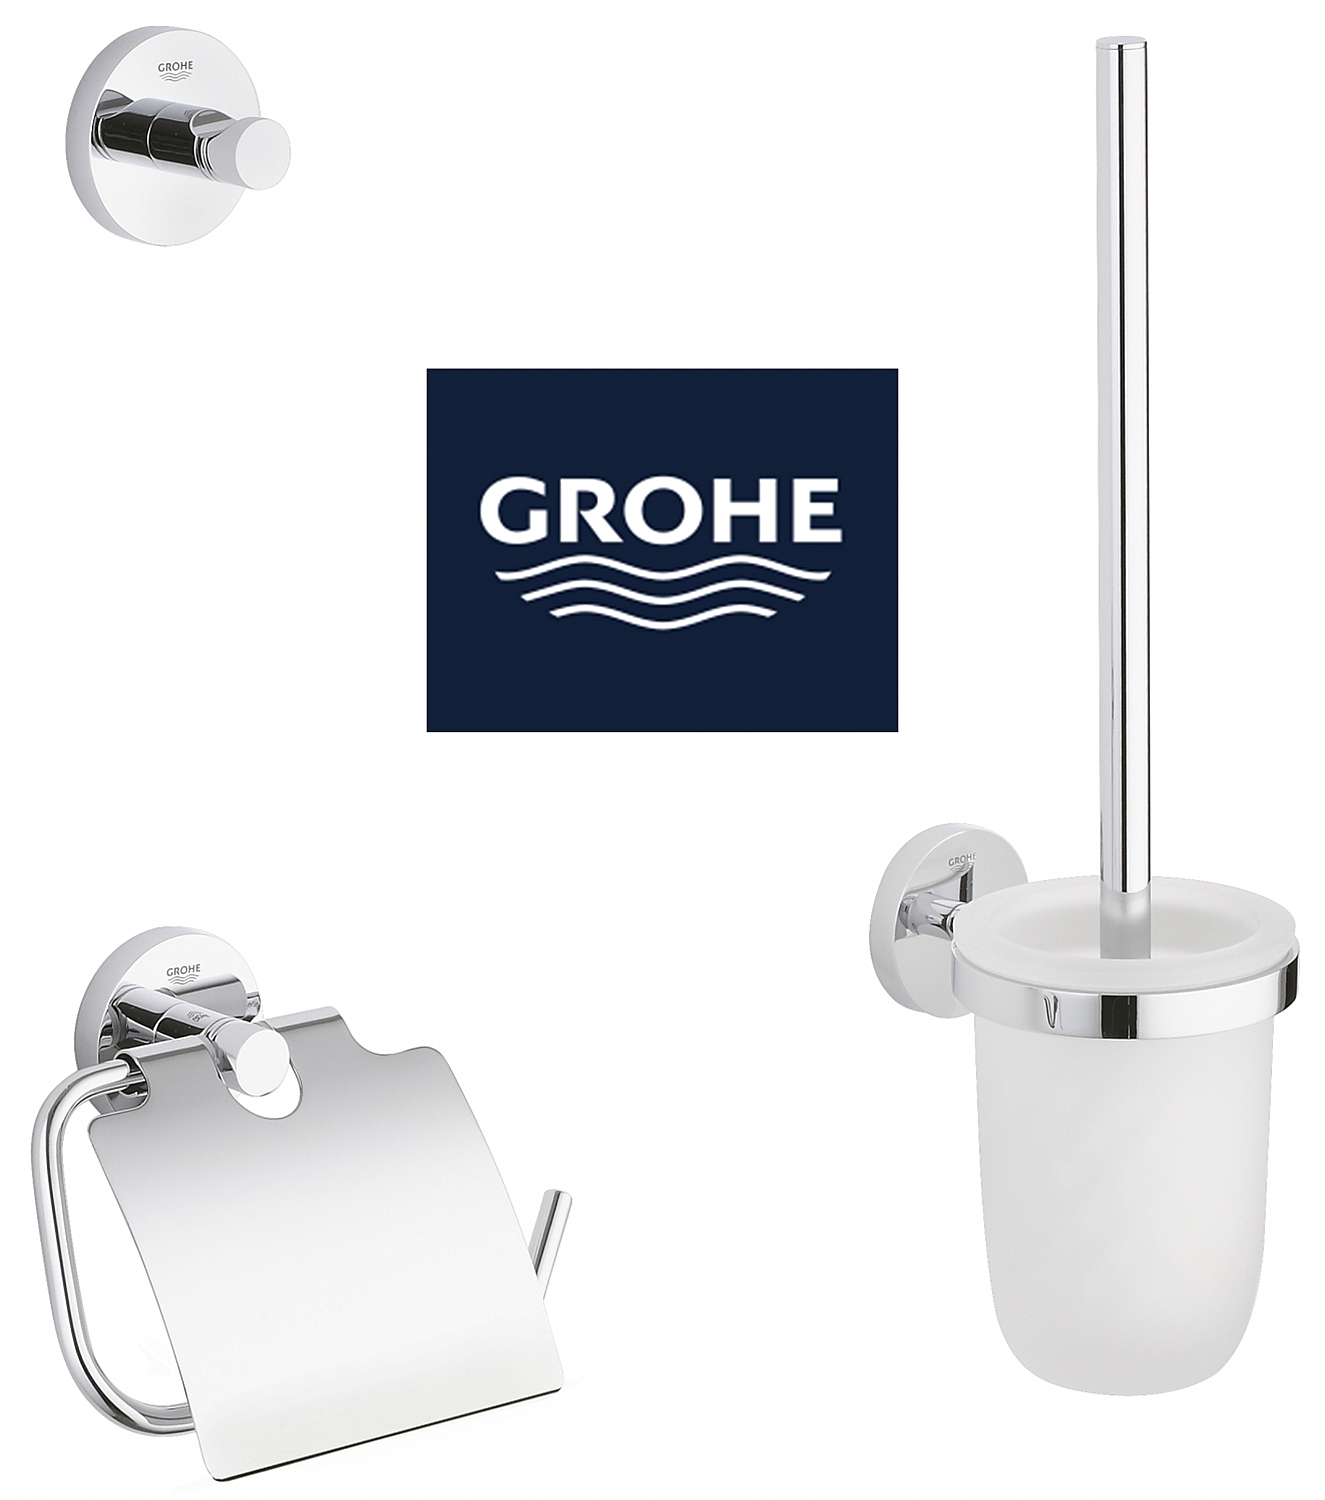 Bezienswaardigheden bekijken aluminium Matrix Grohe Combiset badaccesoires / toiletaccessoires Essentials chroom/wit  40407001 | Sanispecials.nl